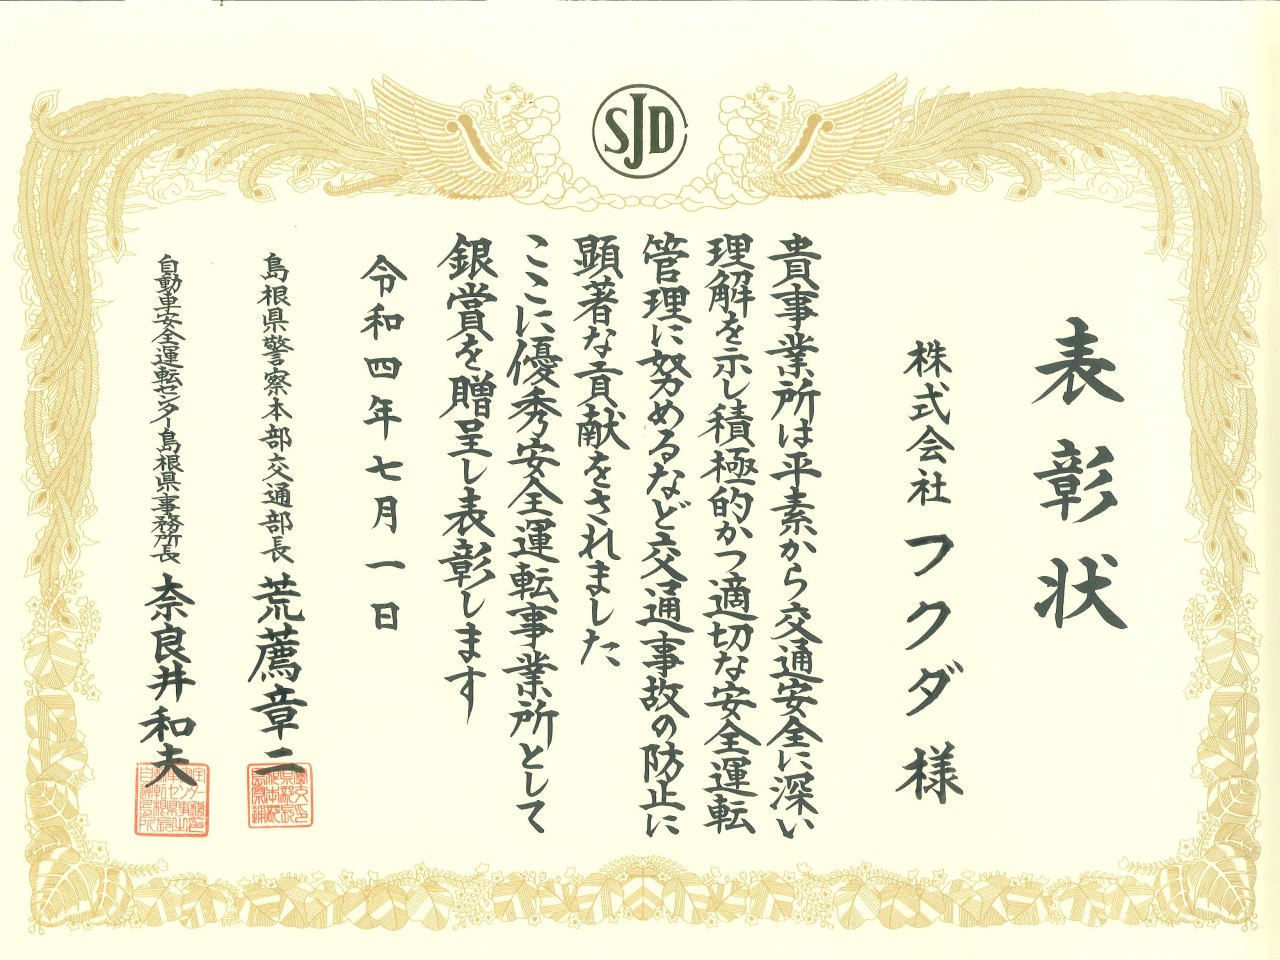 島根県警察本部から表彰状をいただきました。